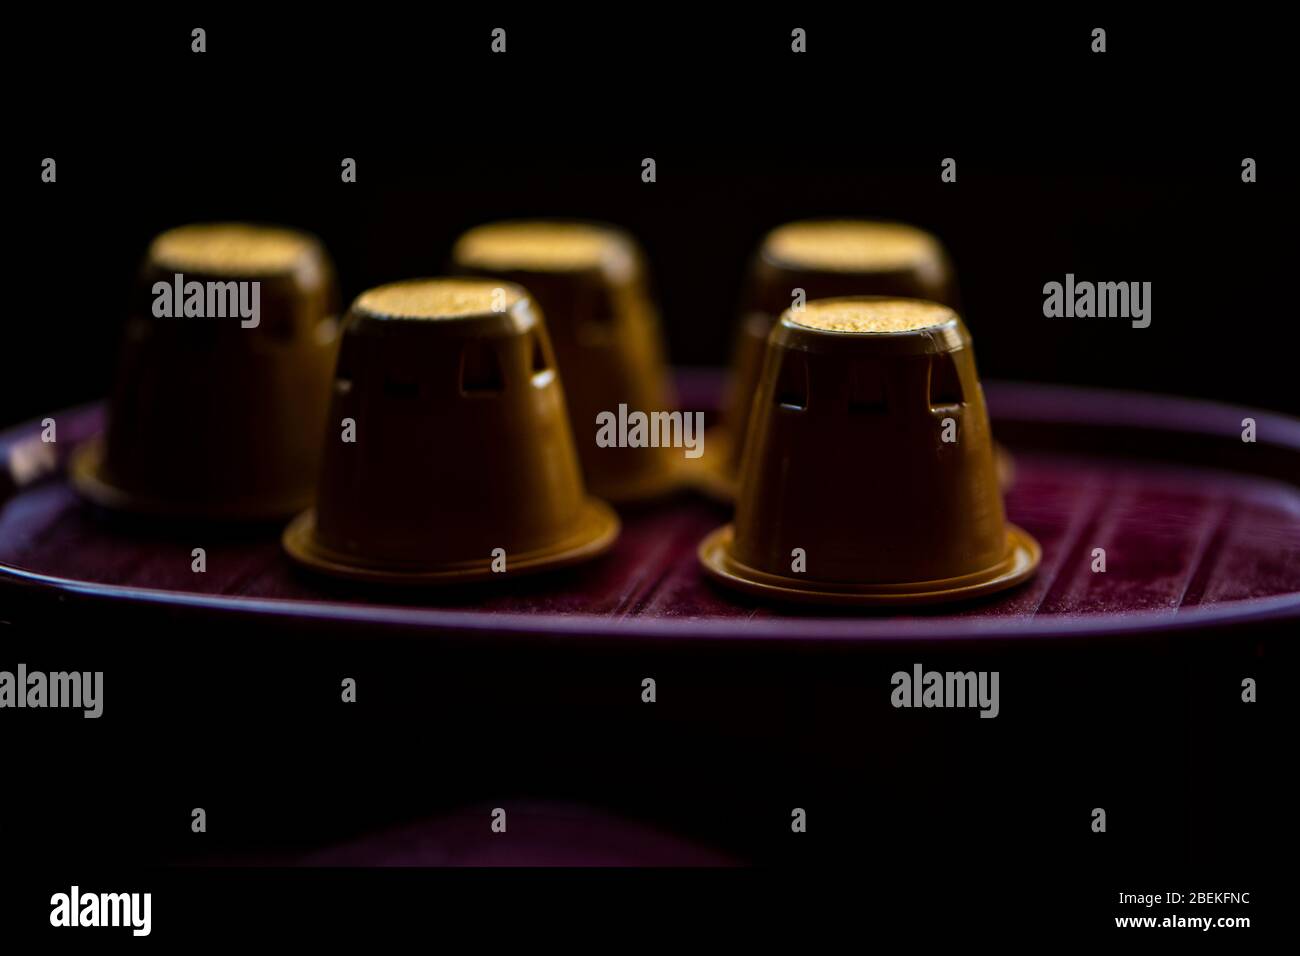 Nespresso george clooney -Fotos und -Bildmaterial in hoher Auflösung – Alamy